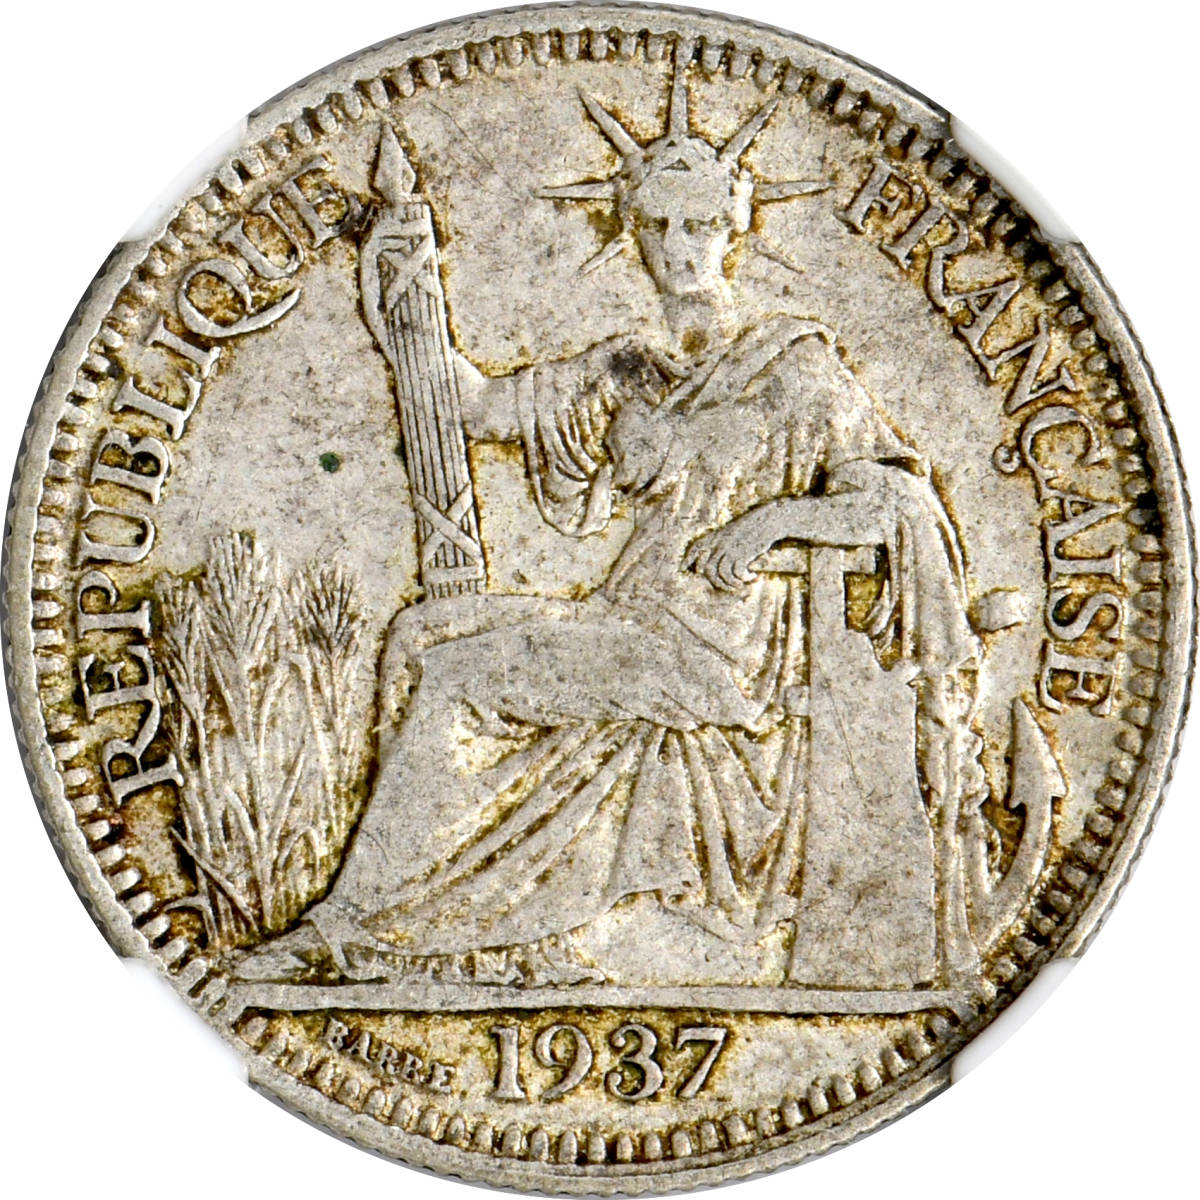 1円〜1937 フランス領インドシナ 10C銀貨 NGC XF40 美品 世界コイン 古銭 貨幣 硬貨 銀貨 金貨 銅貨_画像1